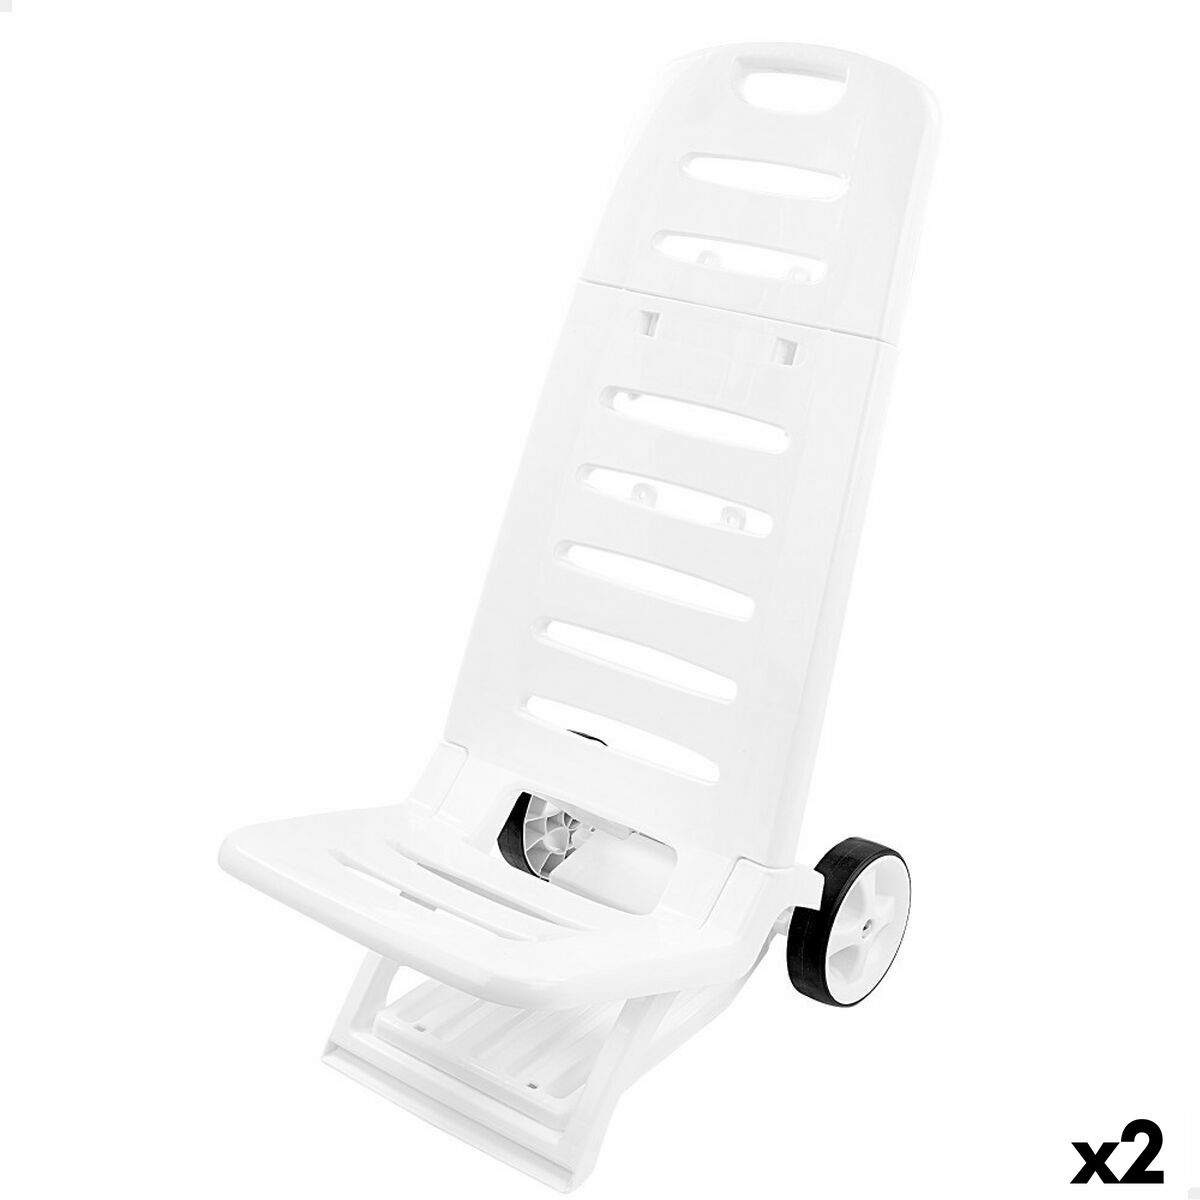 Chaise de Plage Aktive Blanc roues 40 x 84 x 44 cm (2 Unités)